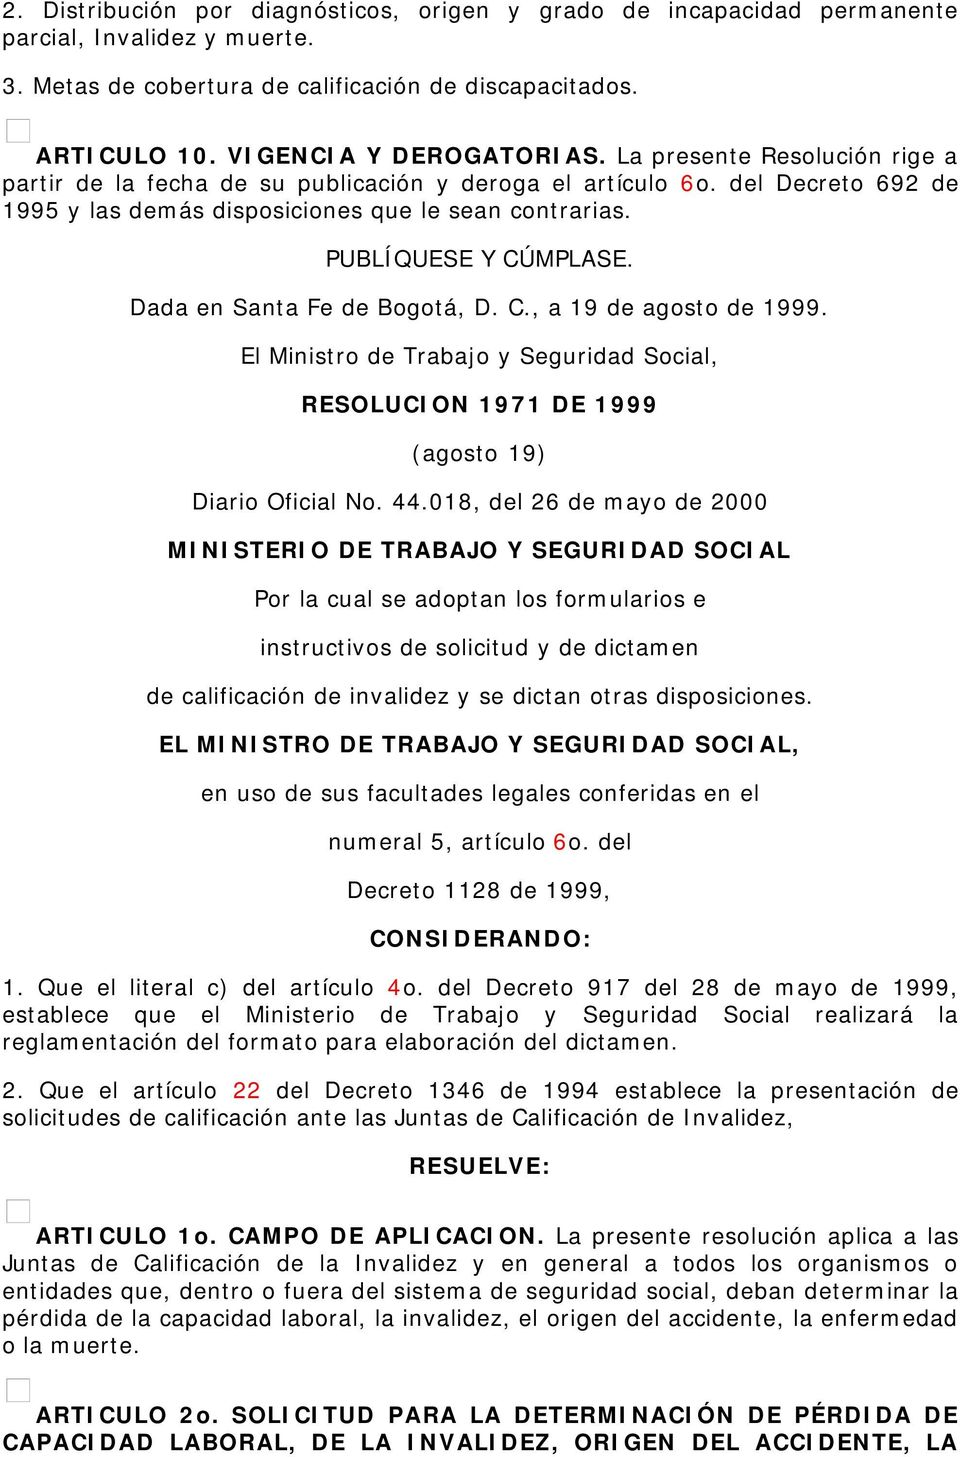 Dada en Santa Fe de Bogotá, D. C., a 19 de agosto de 1999. El Ministro de Trabajo y Seguridad Social, RESOLUCION 1971 DE 1999 (agosto 19) Diario Oficial No. 44.